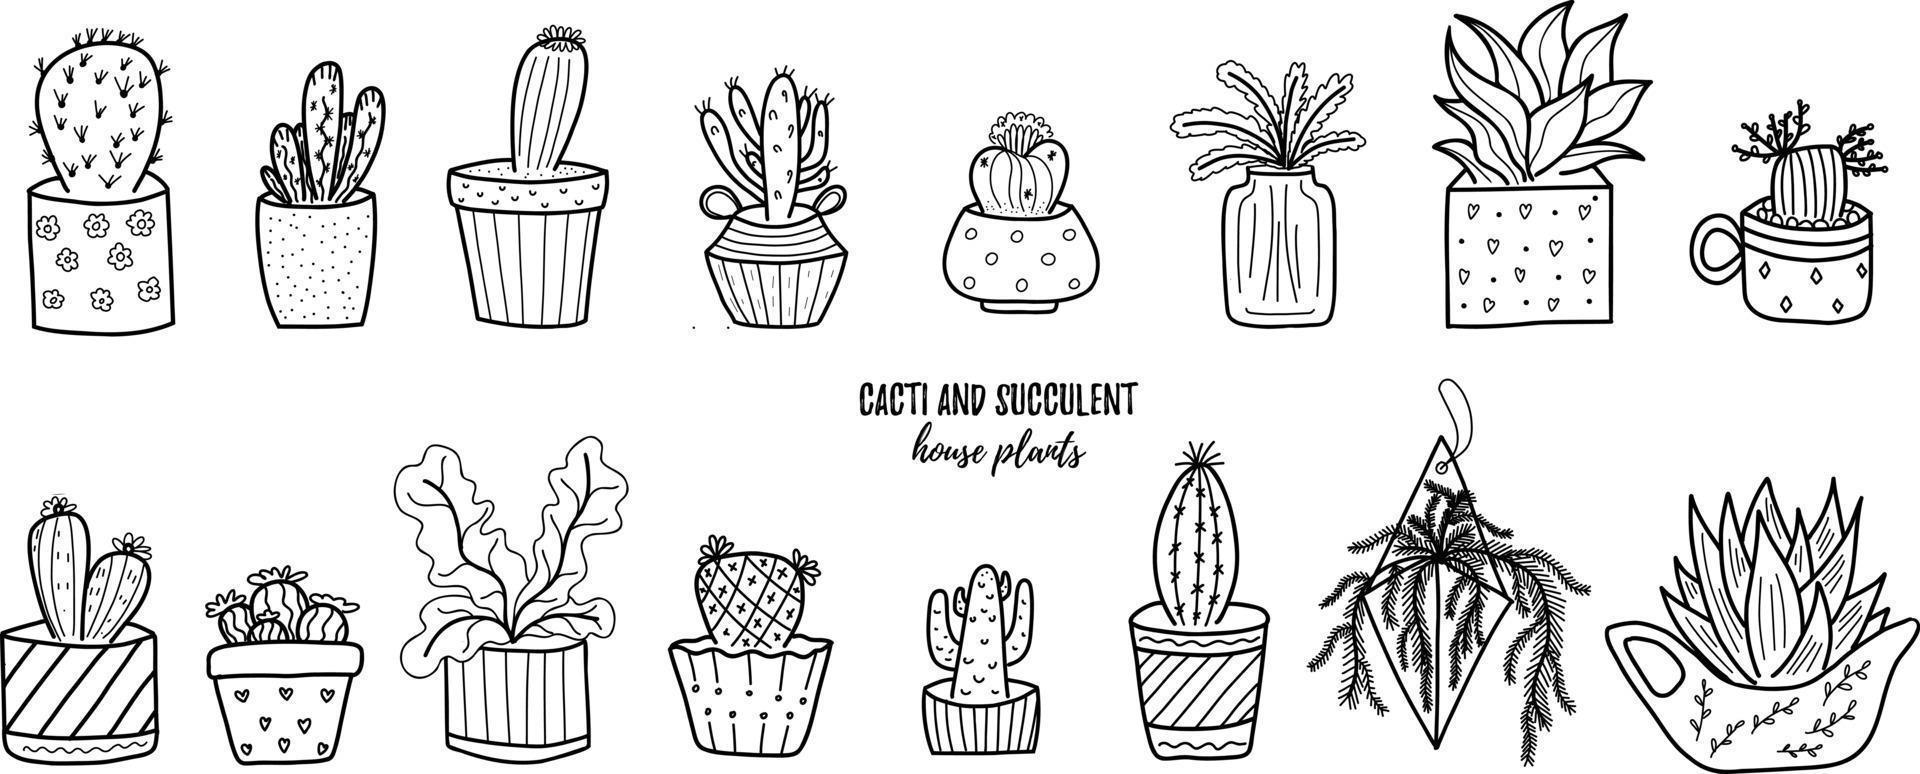 vettore doodle cactus e succulenta raccolta di illustrazioni. piante da appartamento in linea nera in un set di vasi. ottimo per diversi tipi di design e sfondi